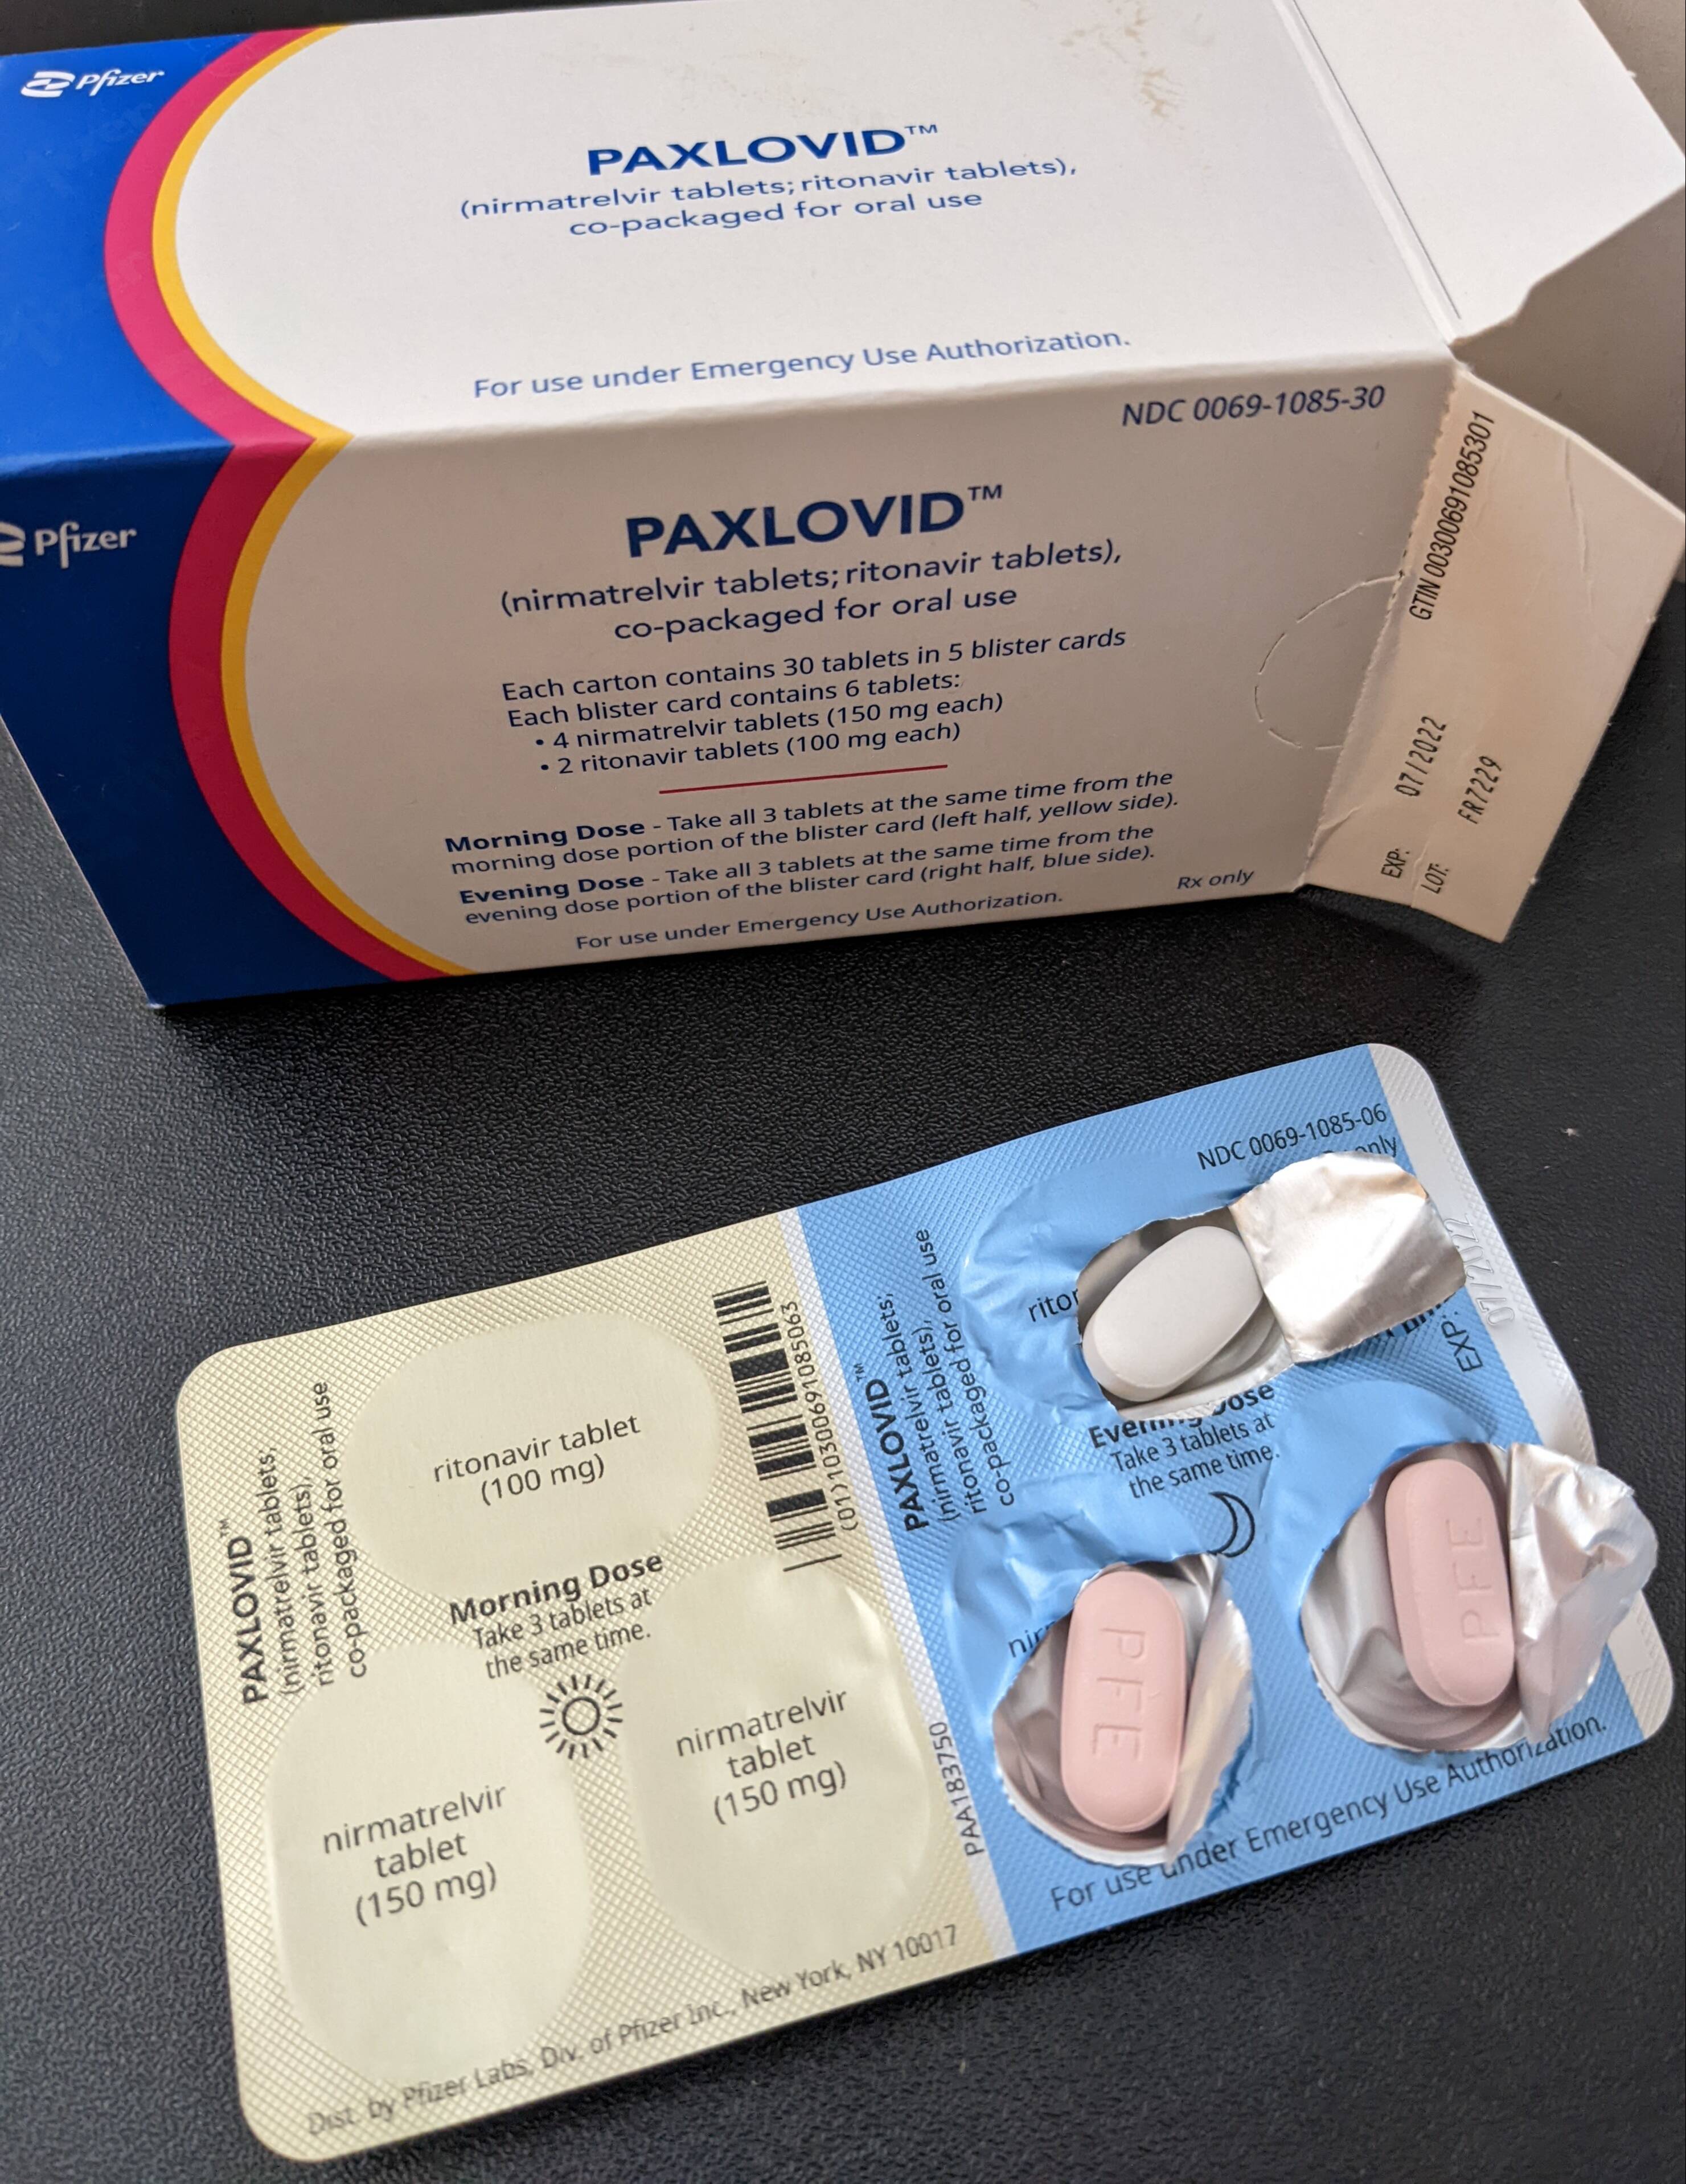 Arriben els tractaments de l'antiviral de Pfizer contra la covid-19 adquirits per l'Estat